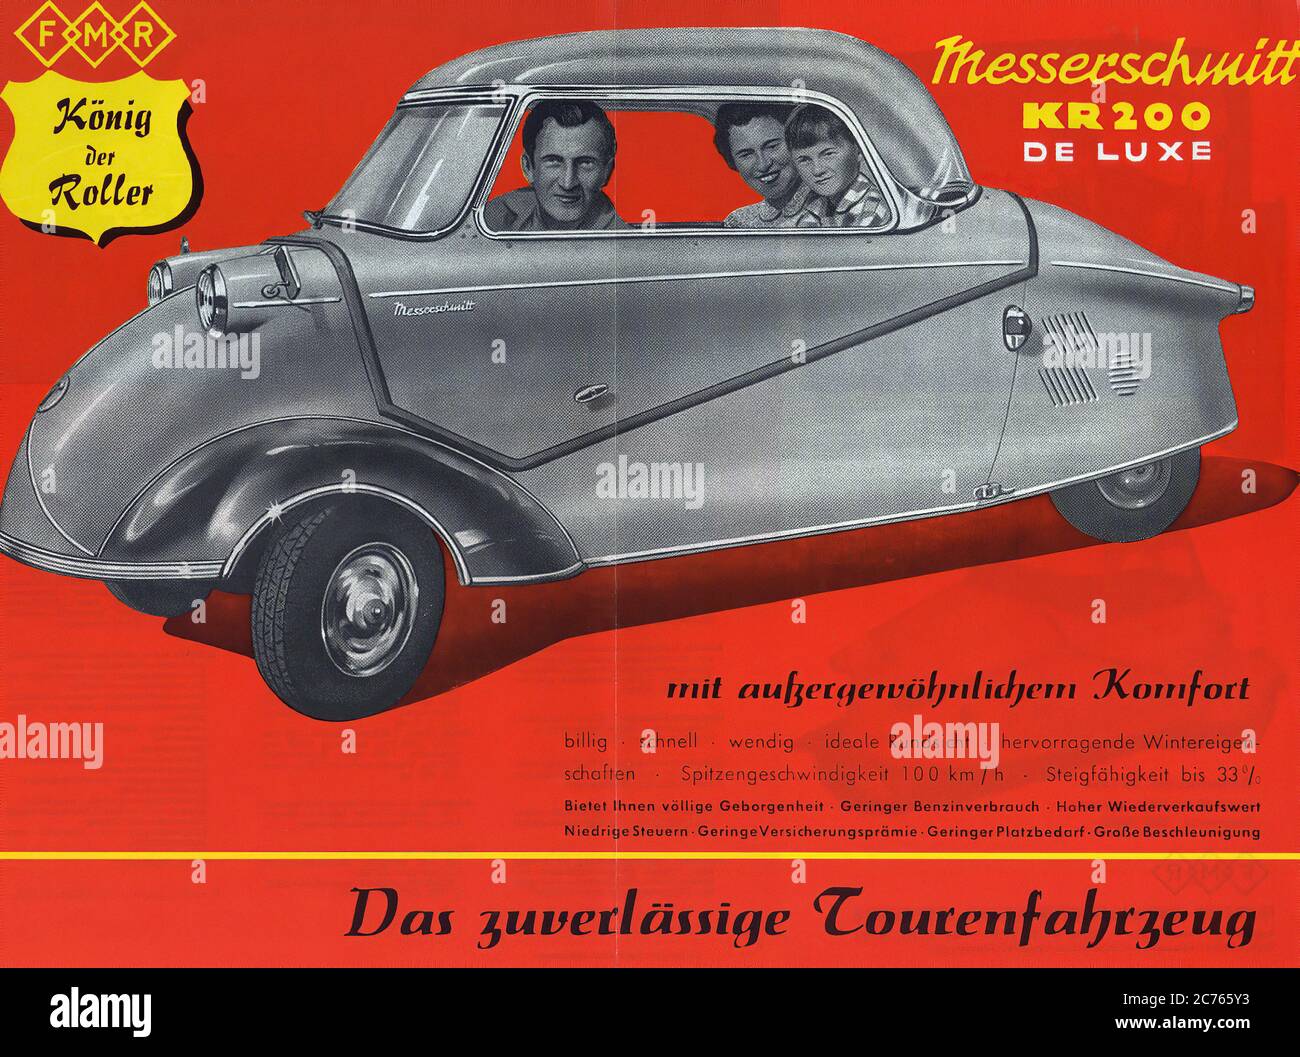 Messerschmitt Kabinenroller 200 Werbung Von 1955 - Vintage car advertising  Stock Photo - Alamy